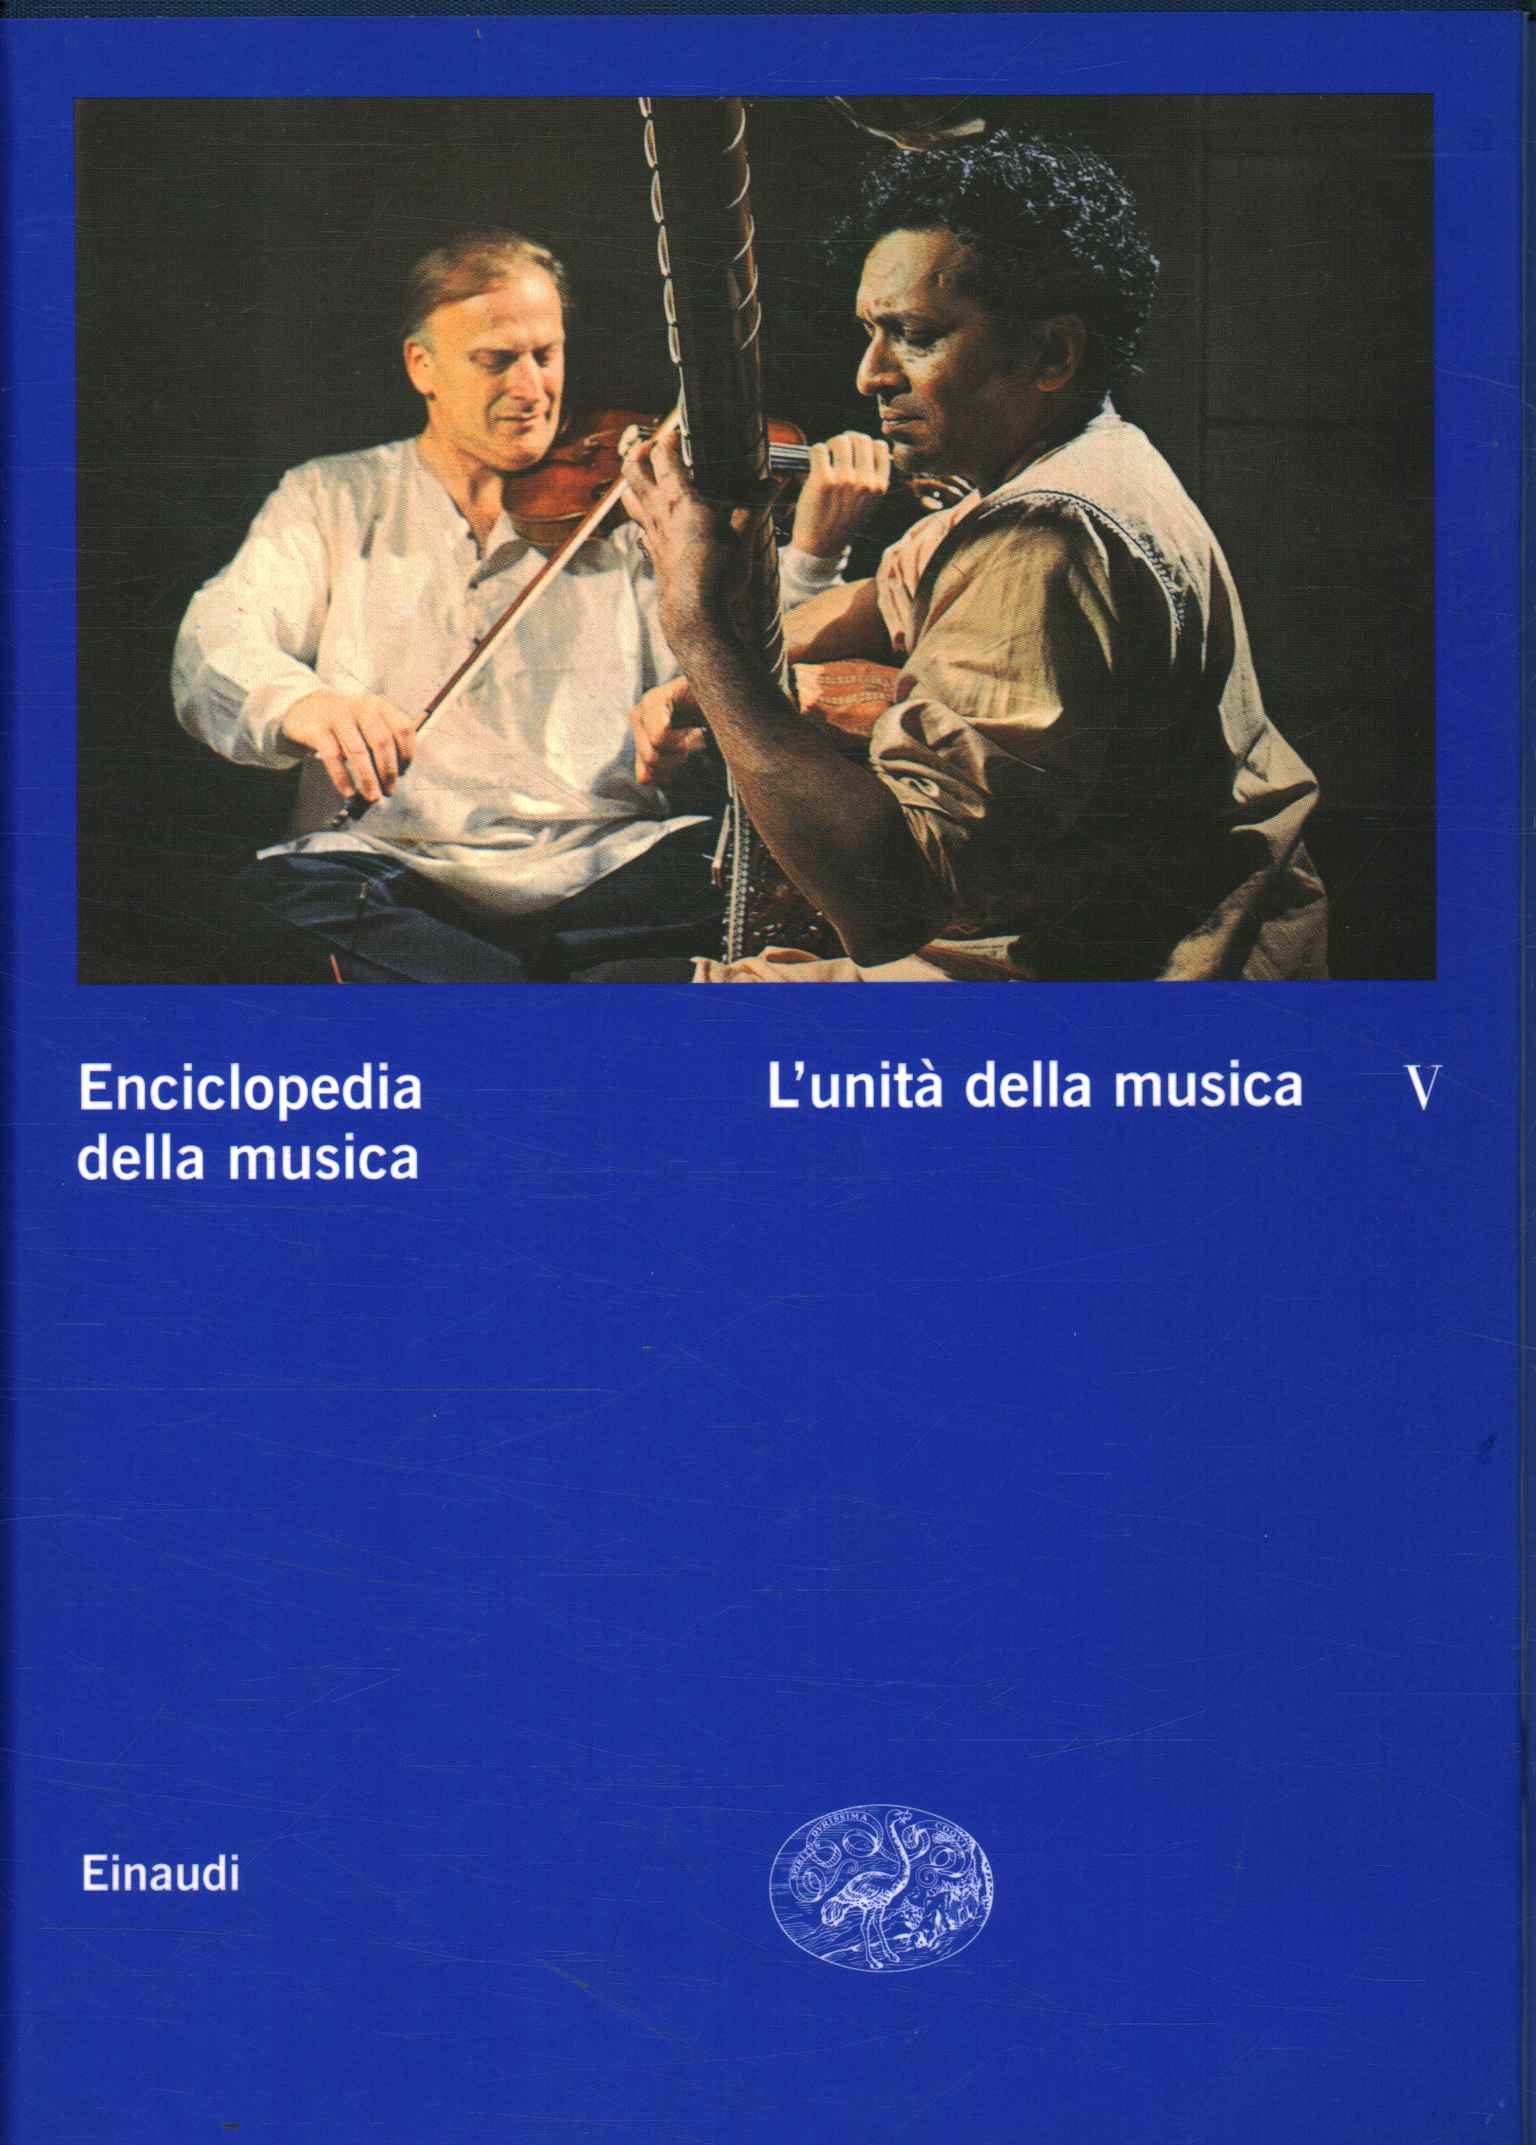 Enciclopedia de la música. La unidad